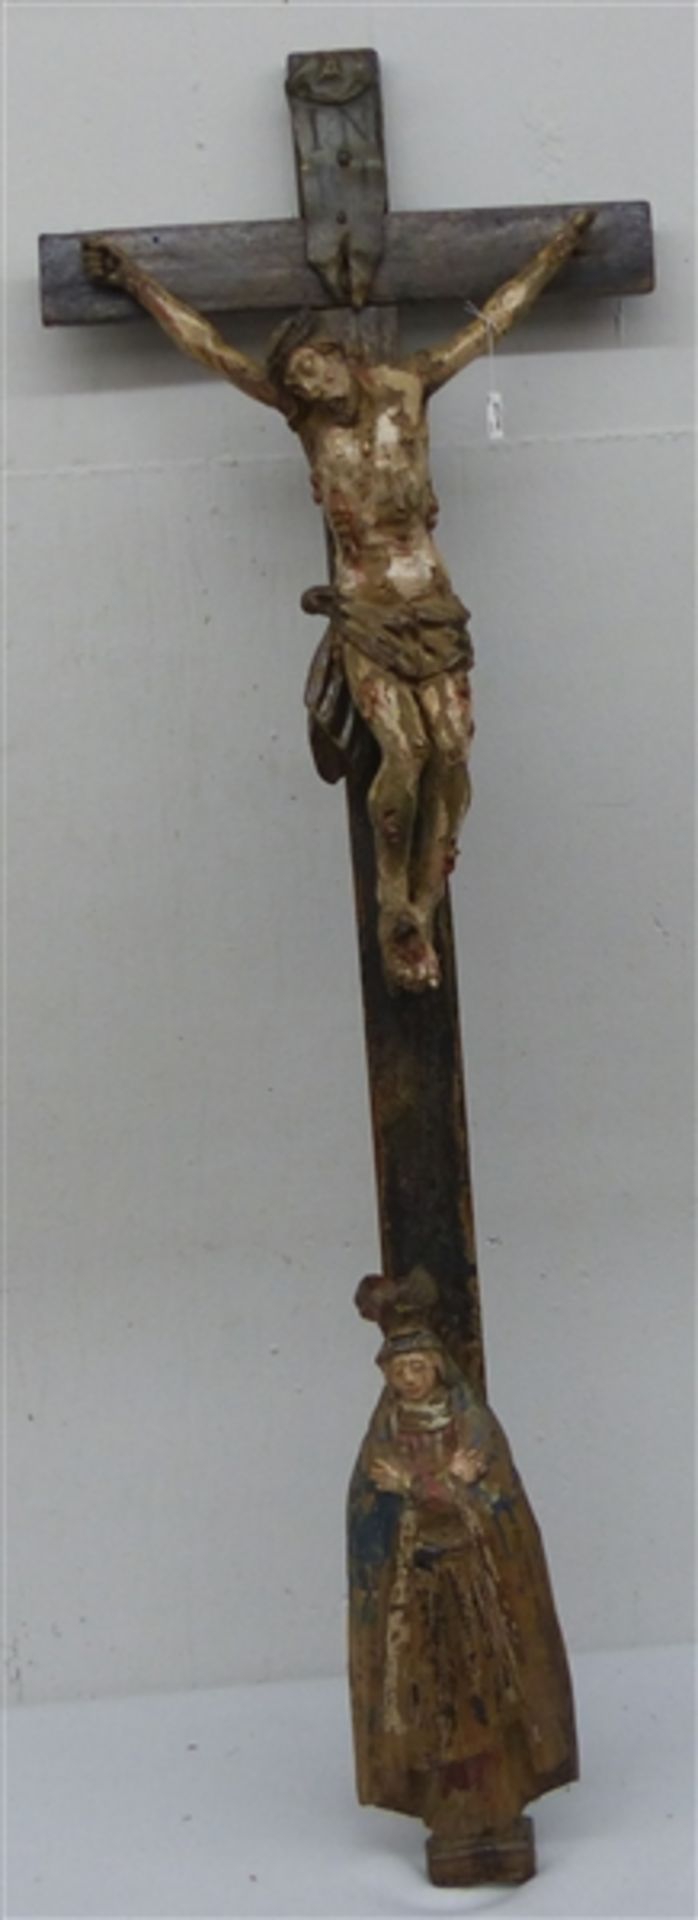 Holzskulptur Christus am Kreuz mit Assistenzfigur, Süddeutsch 17./18. Jh., gute Arbeit,